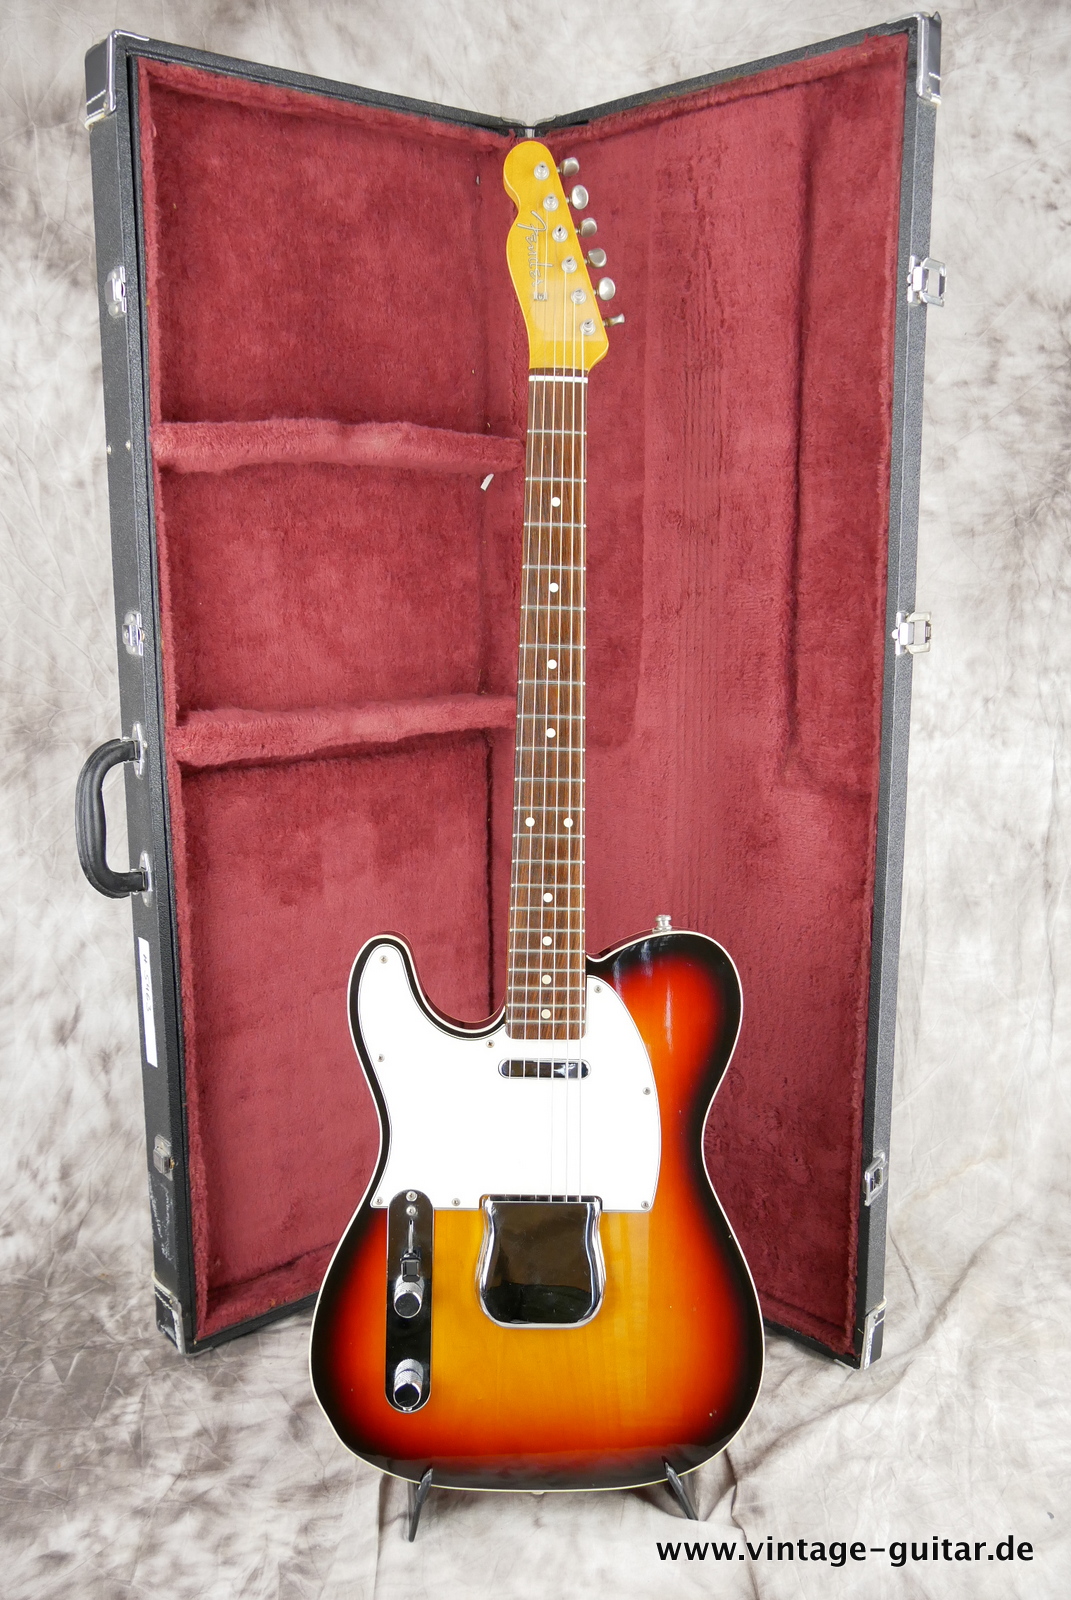 Fender-Telecaster-Custom-MIJ-62-reissue-1985-sunburst-017.JPG